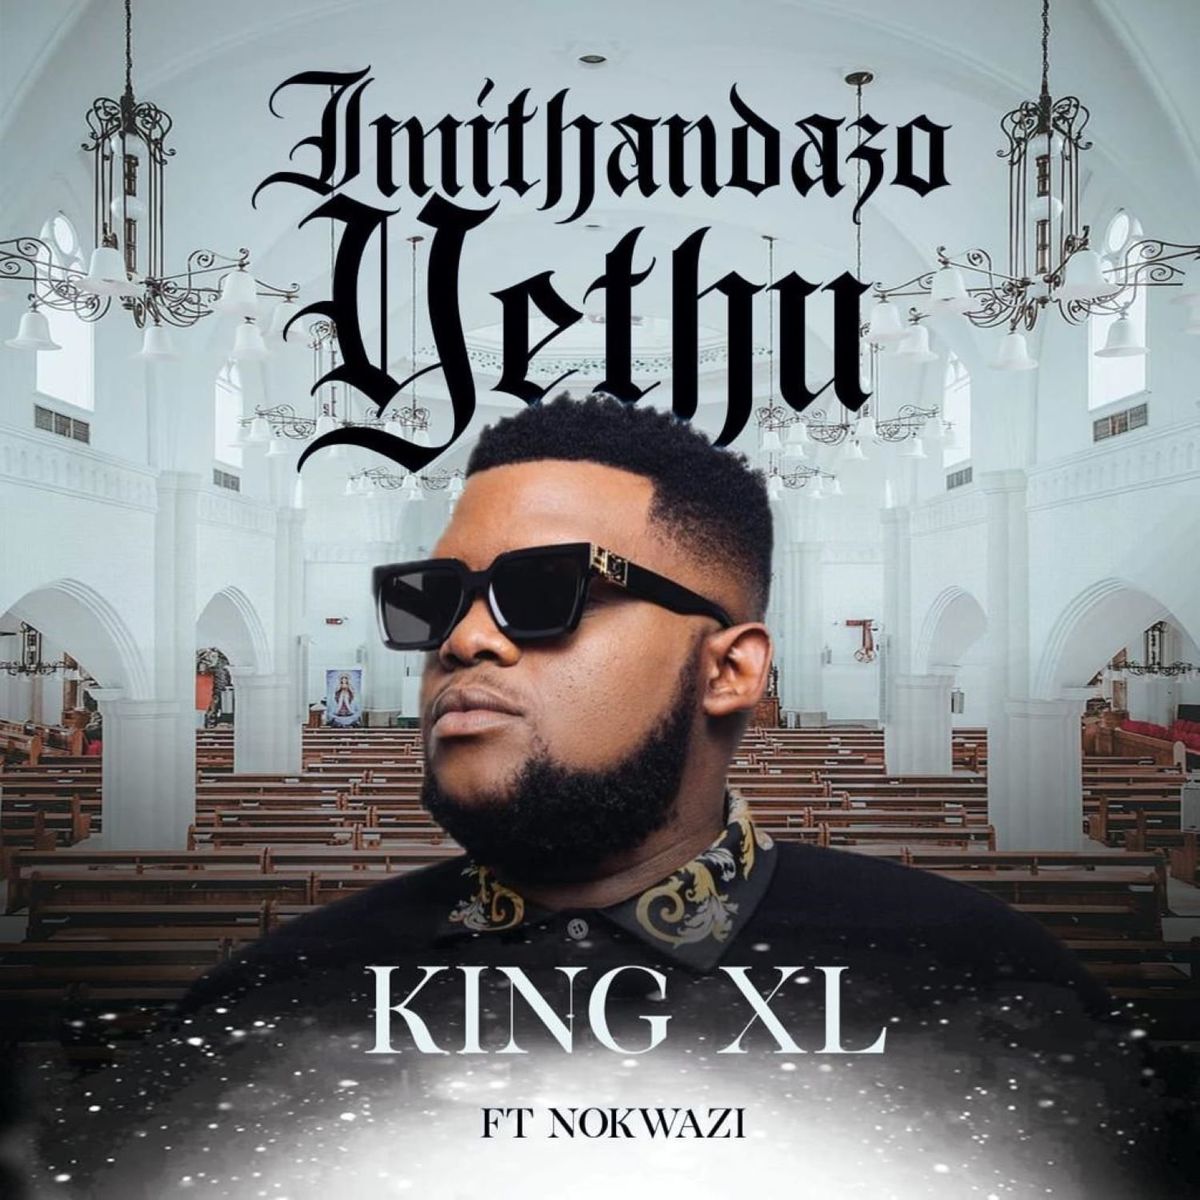 King XL - Imithandazo Yethu Ft. Nokwazi